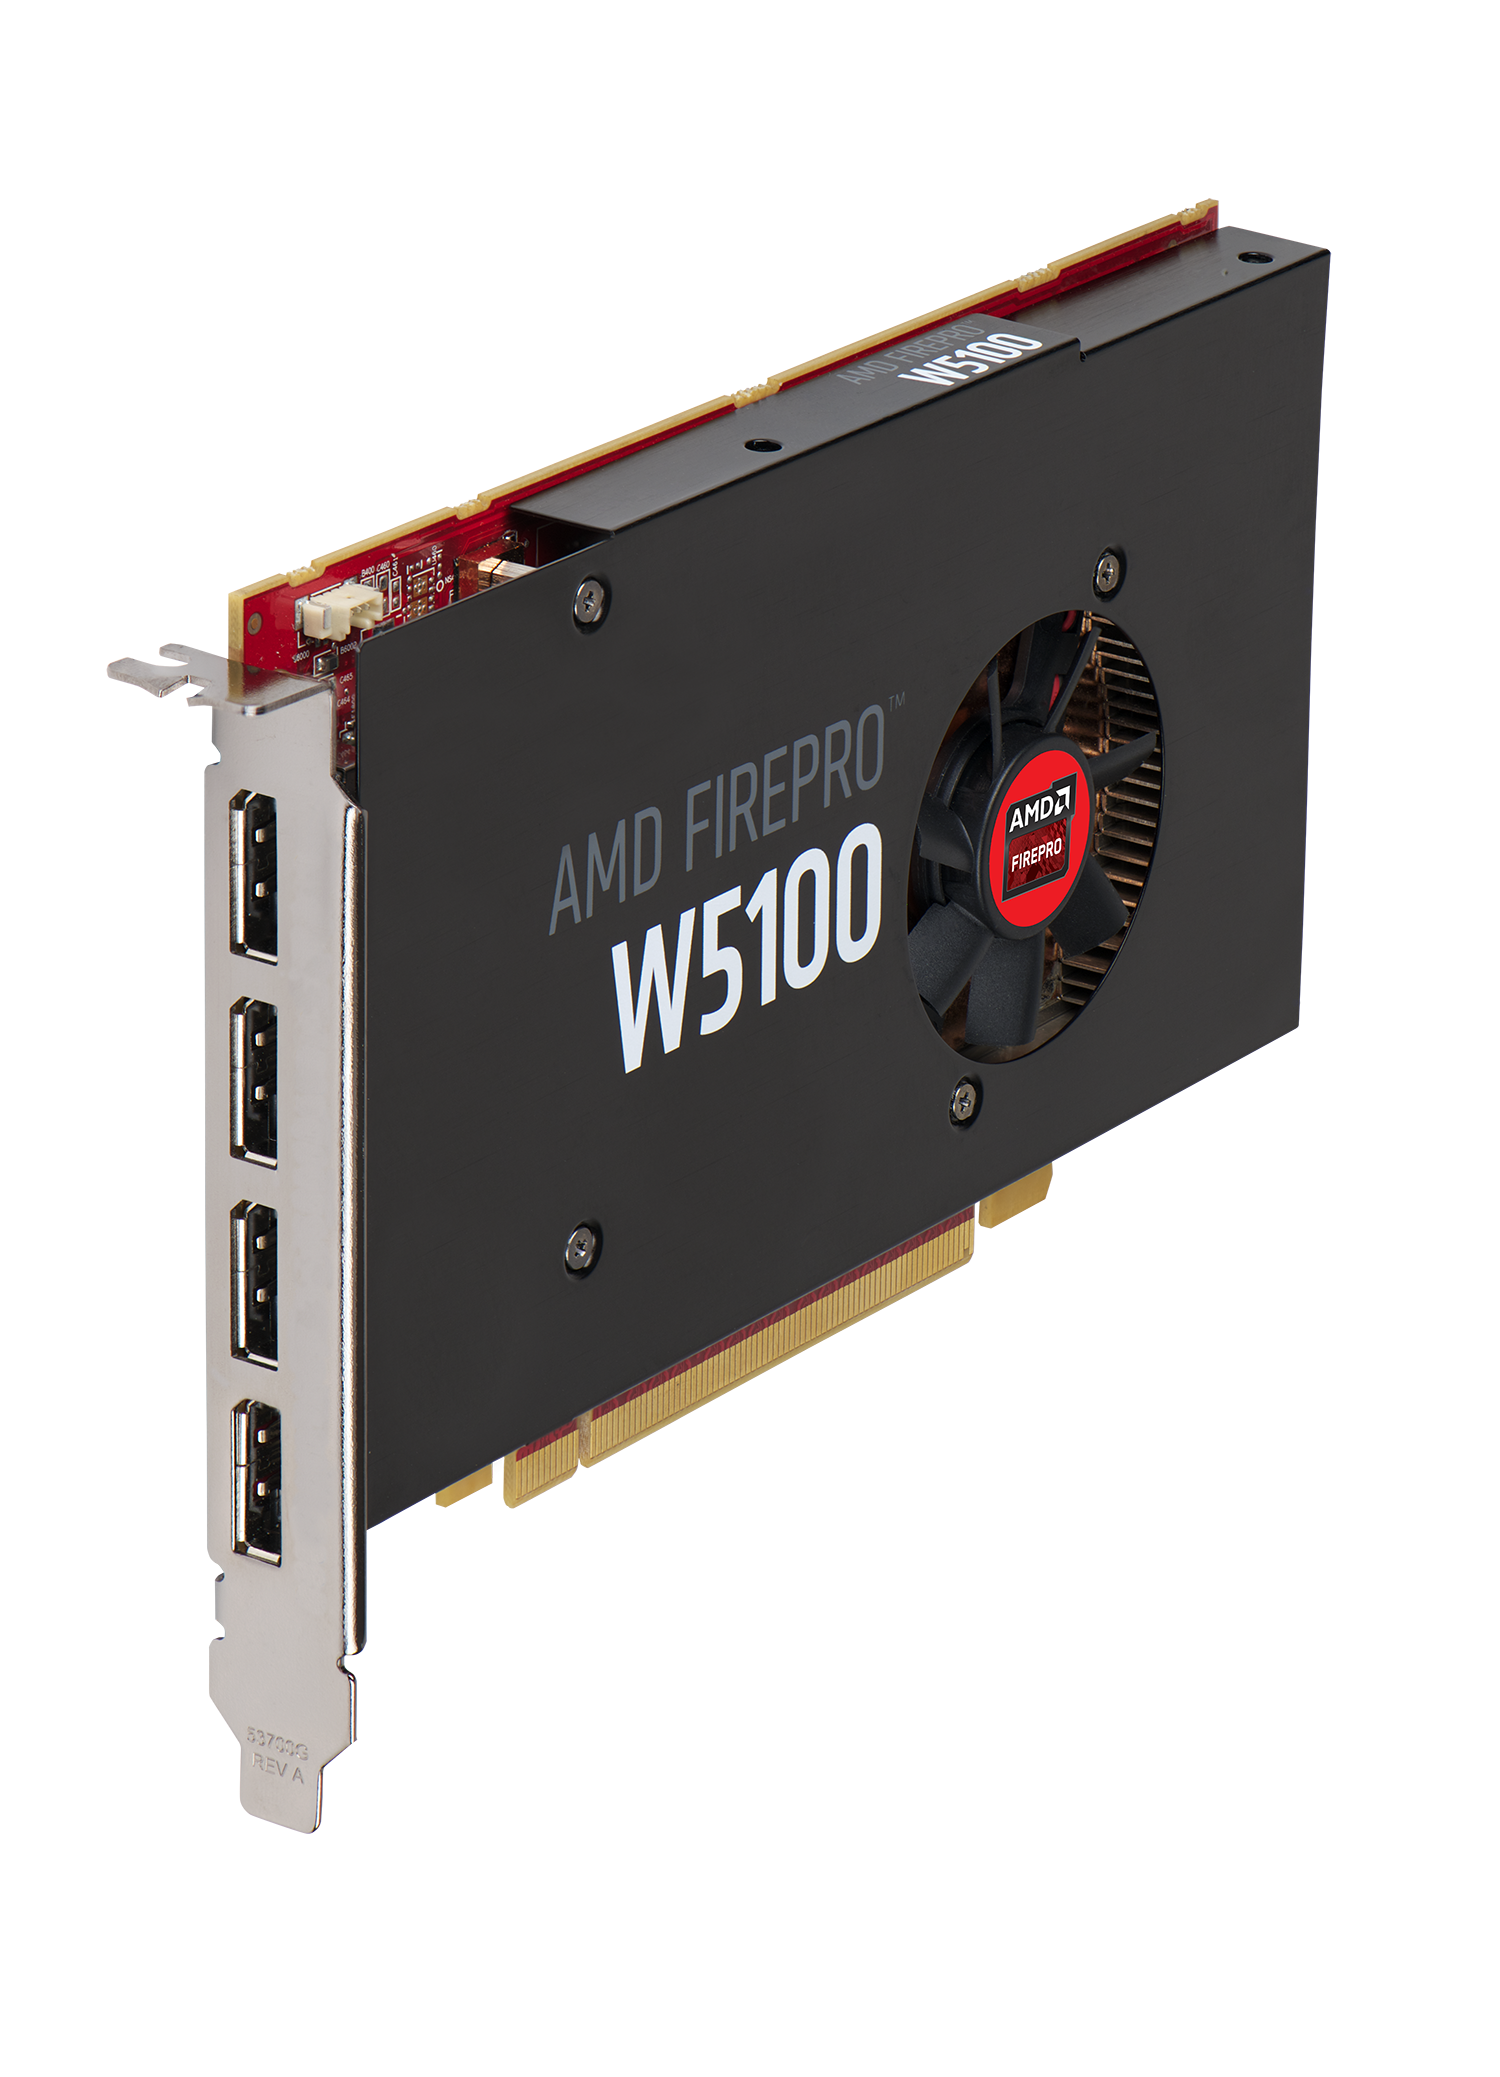 Immagine pubblicata in relazione al seguente contenuto: AMD annuncia le video card FirePro W7100, W5100, W4100 e W2100 | Nome immagine: news21488_AMD-FirePro-W5100_1.png